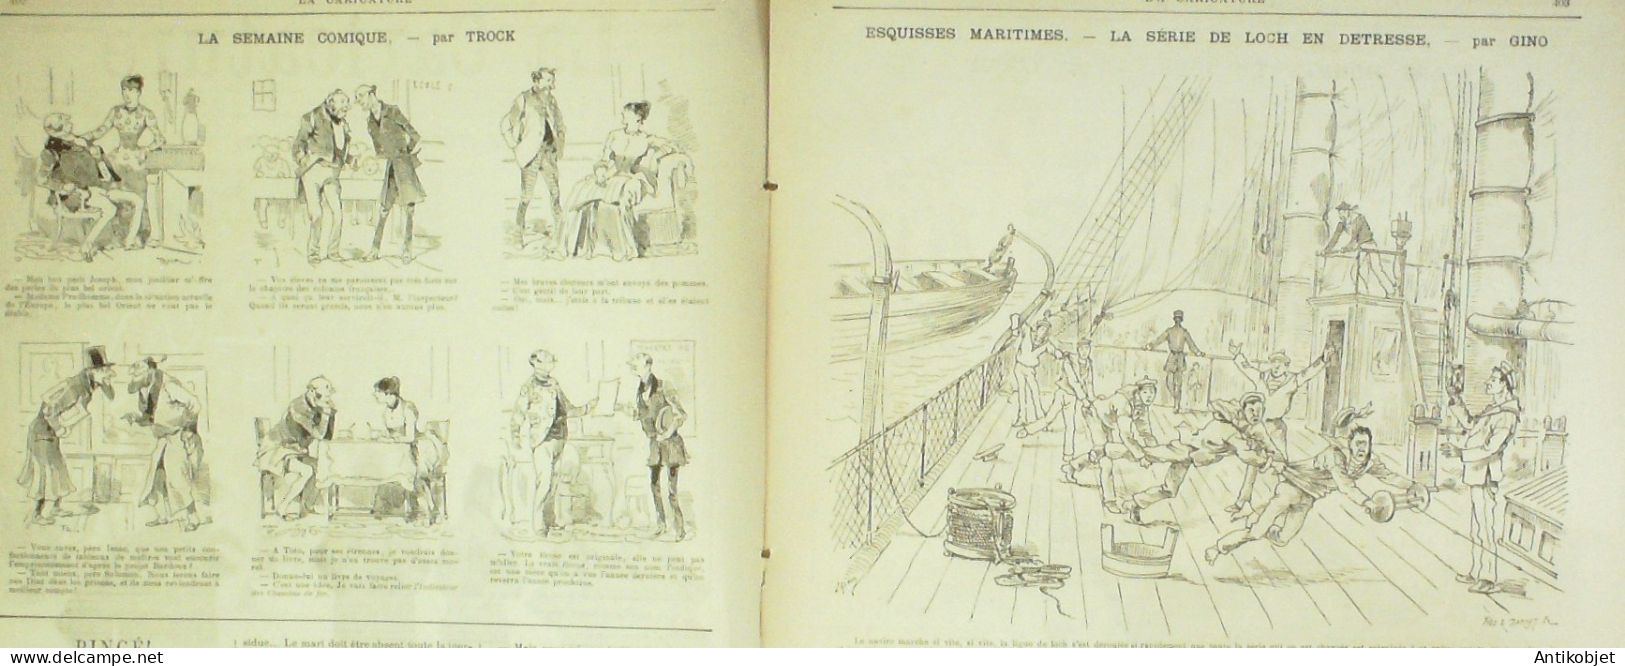 La Caricature 1885 N°312 Sur Le Terrain Sorel Gino Boussenard Par Luque Duel Job Loys - Zeitschriften - Vor 1900